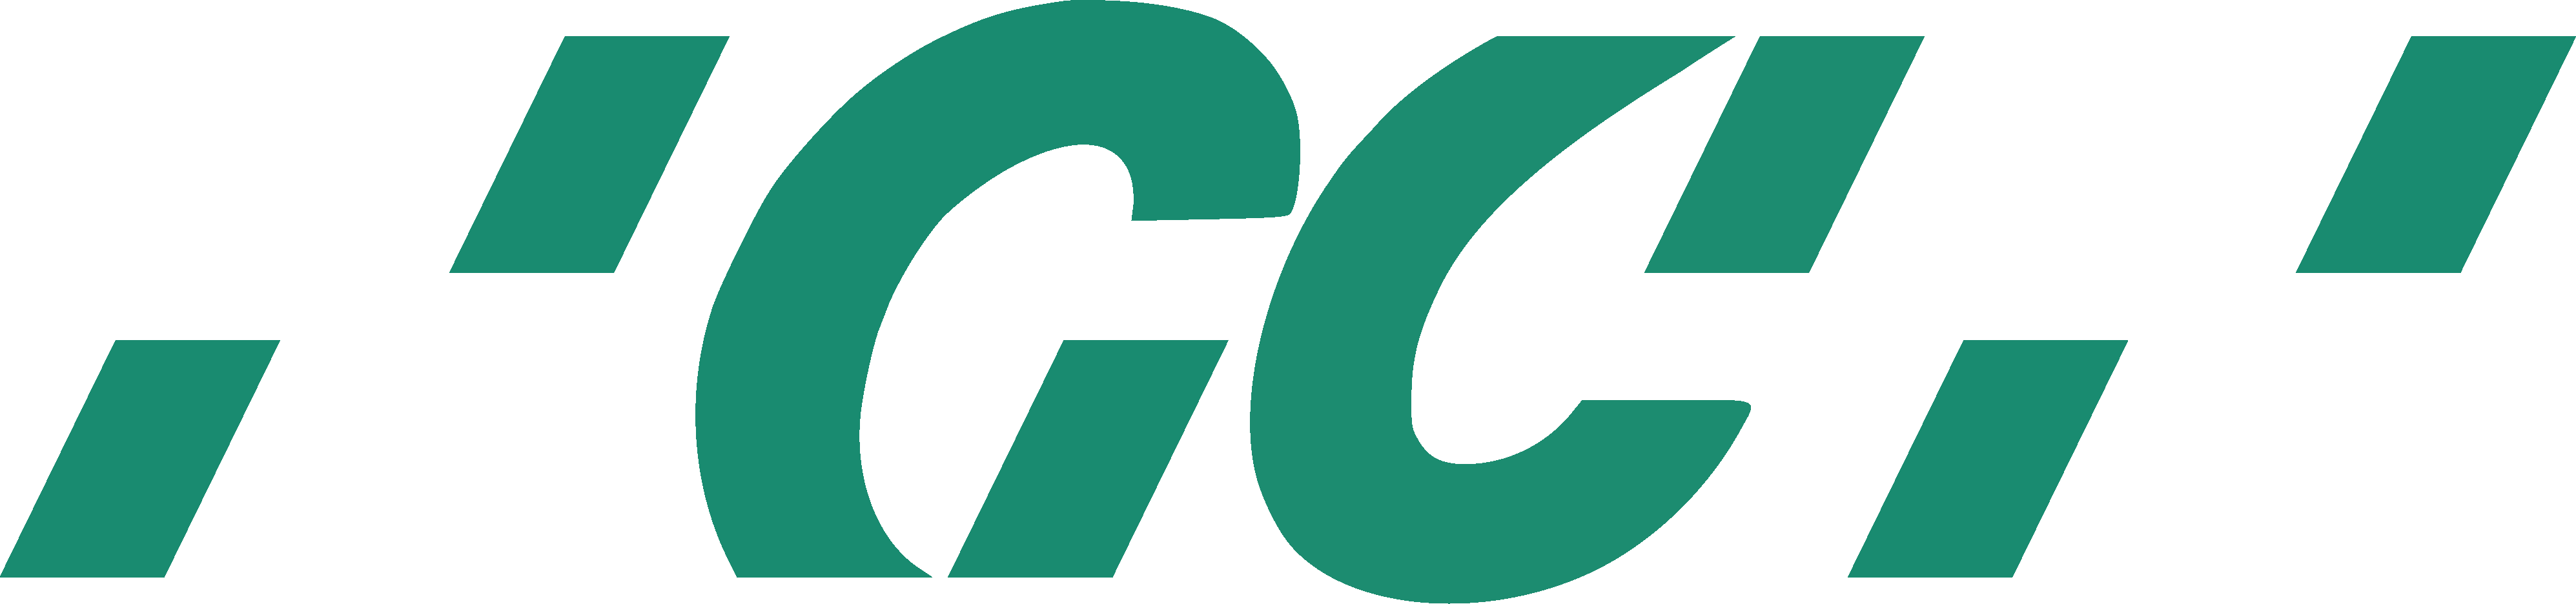 GC_Logo